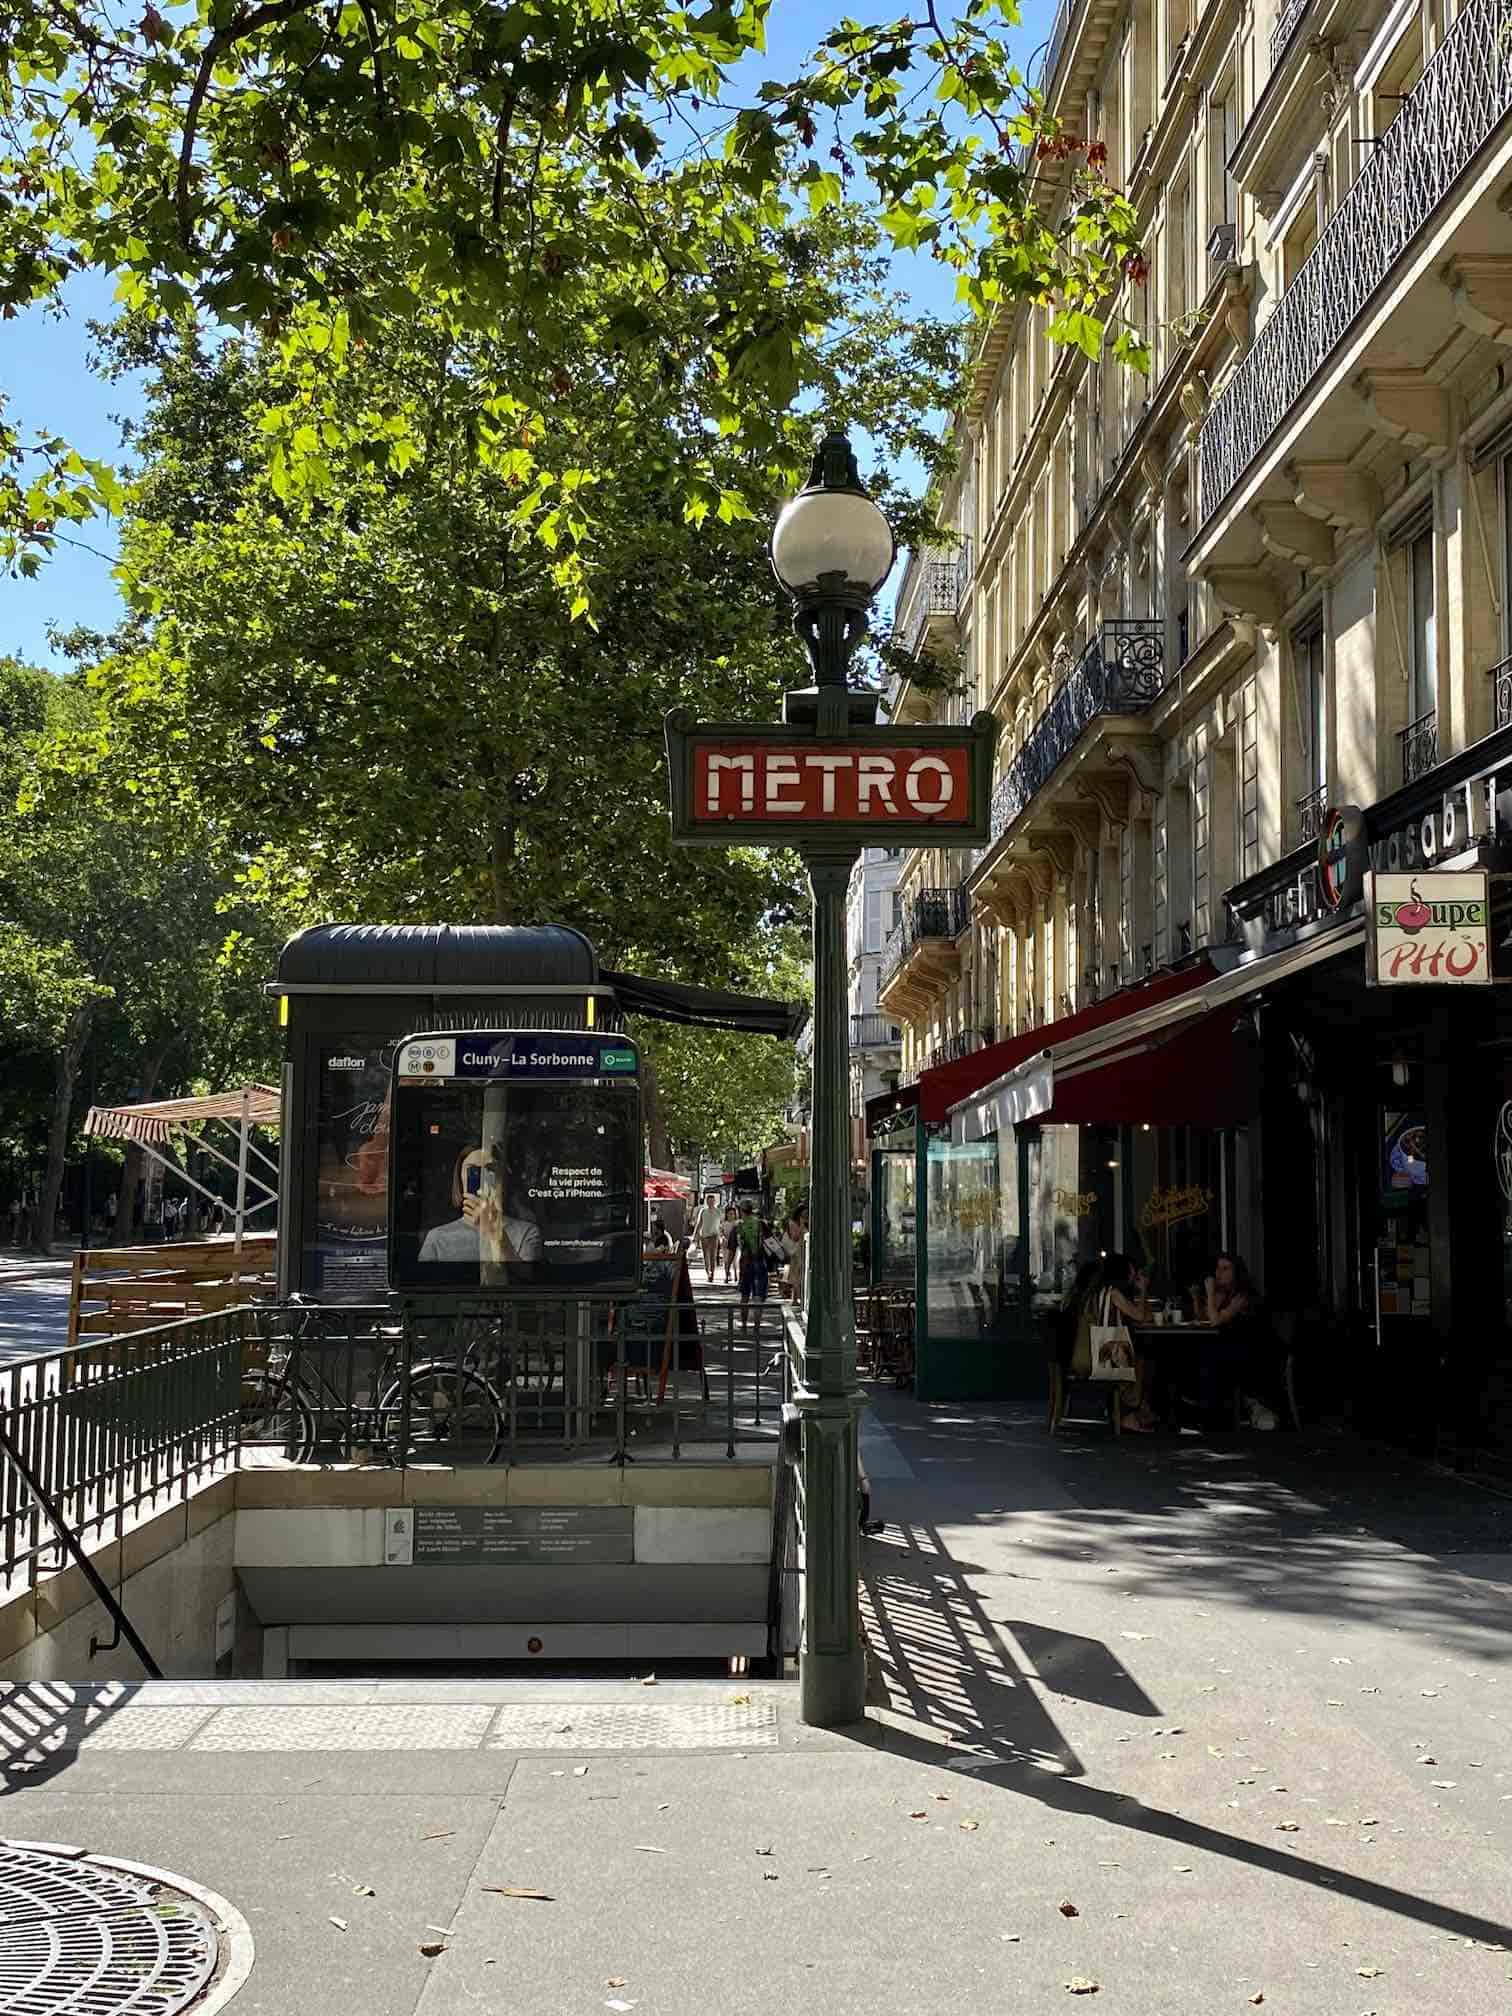 Metro Station in Paris, St. Germain, mit typischer französischer Häuserfassade und Architektur